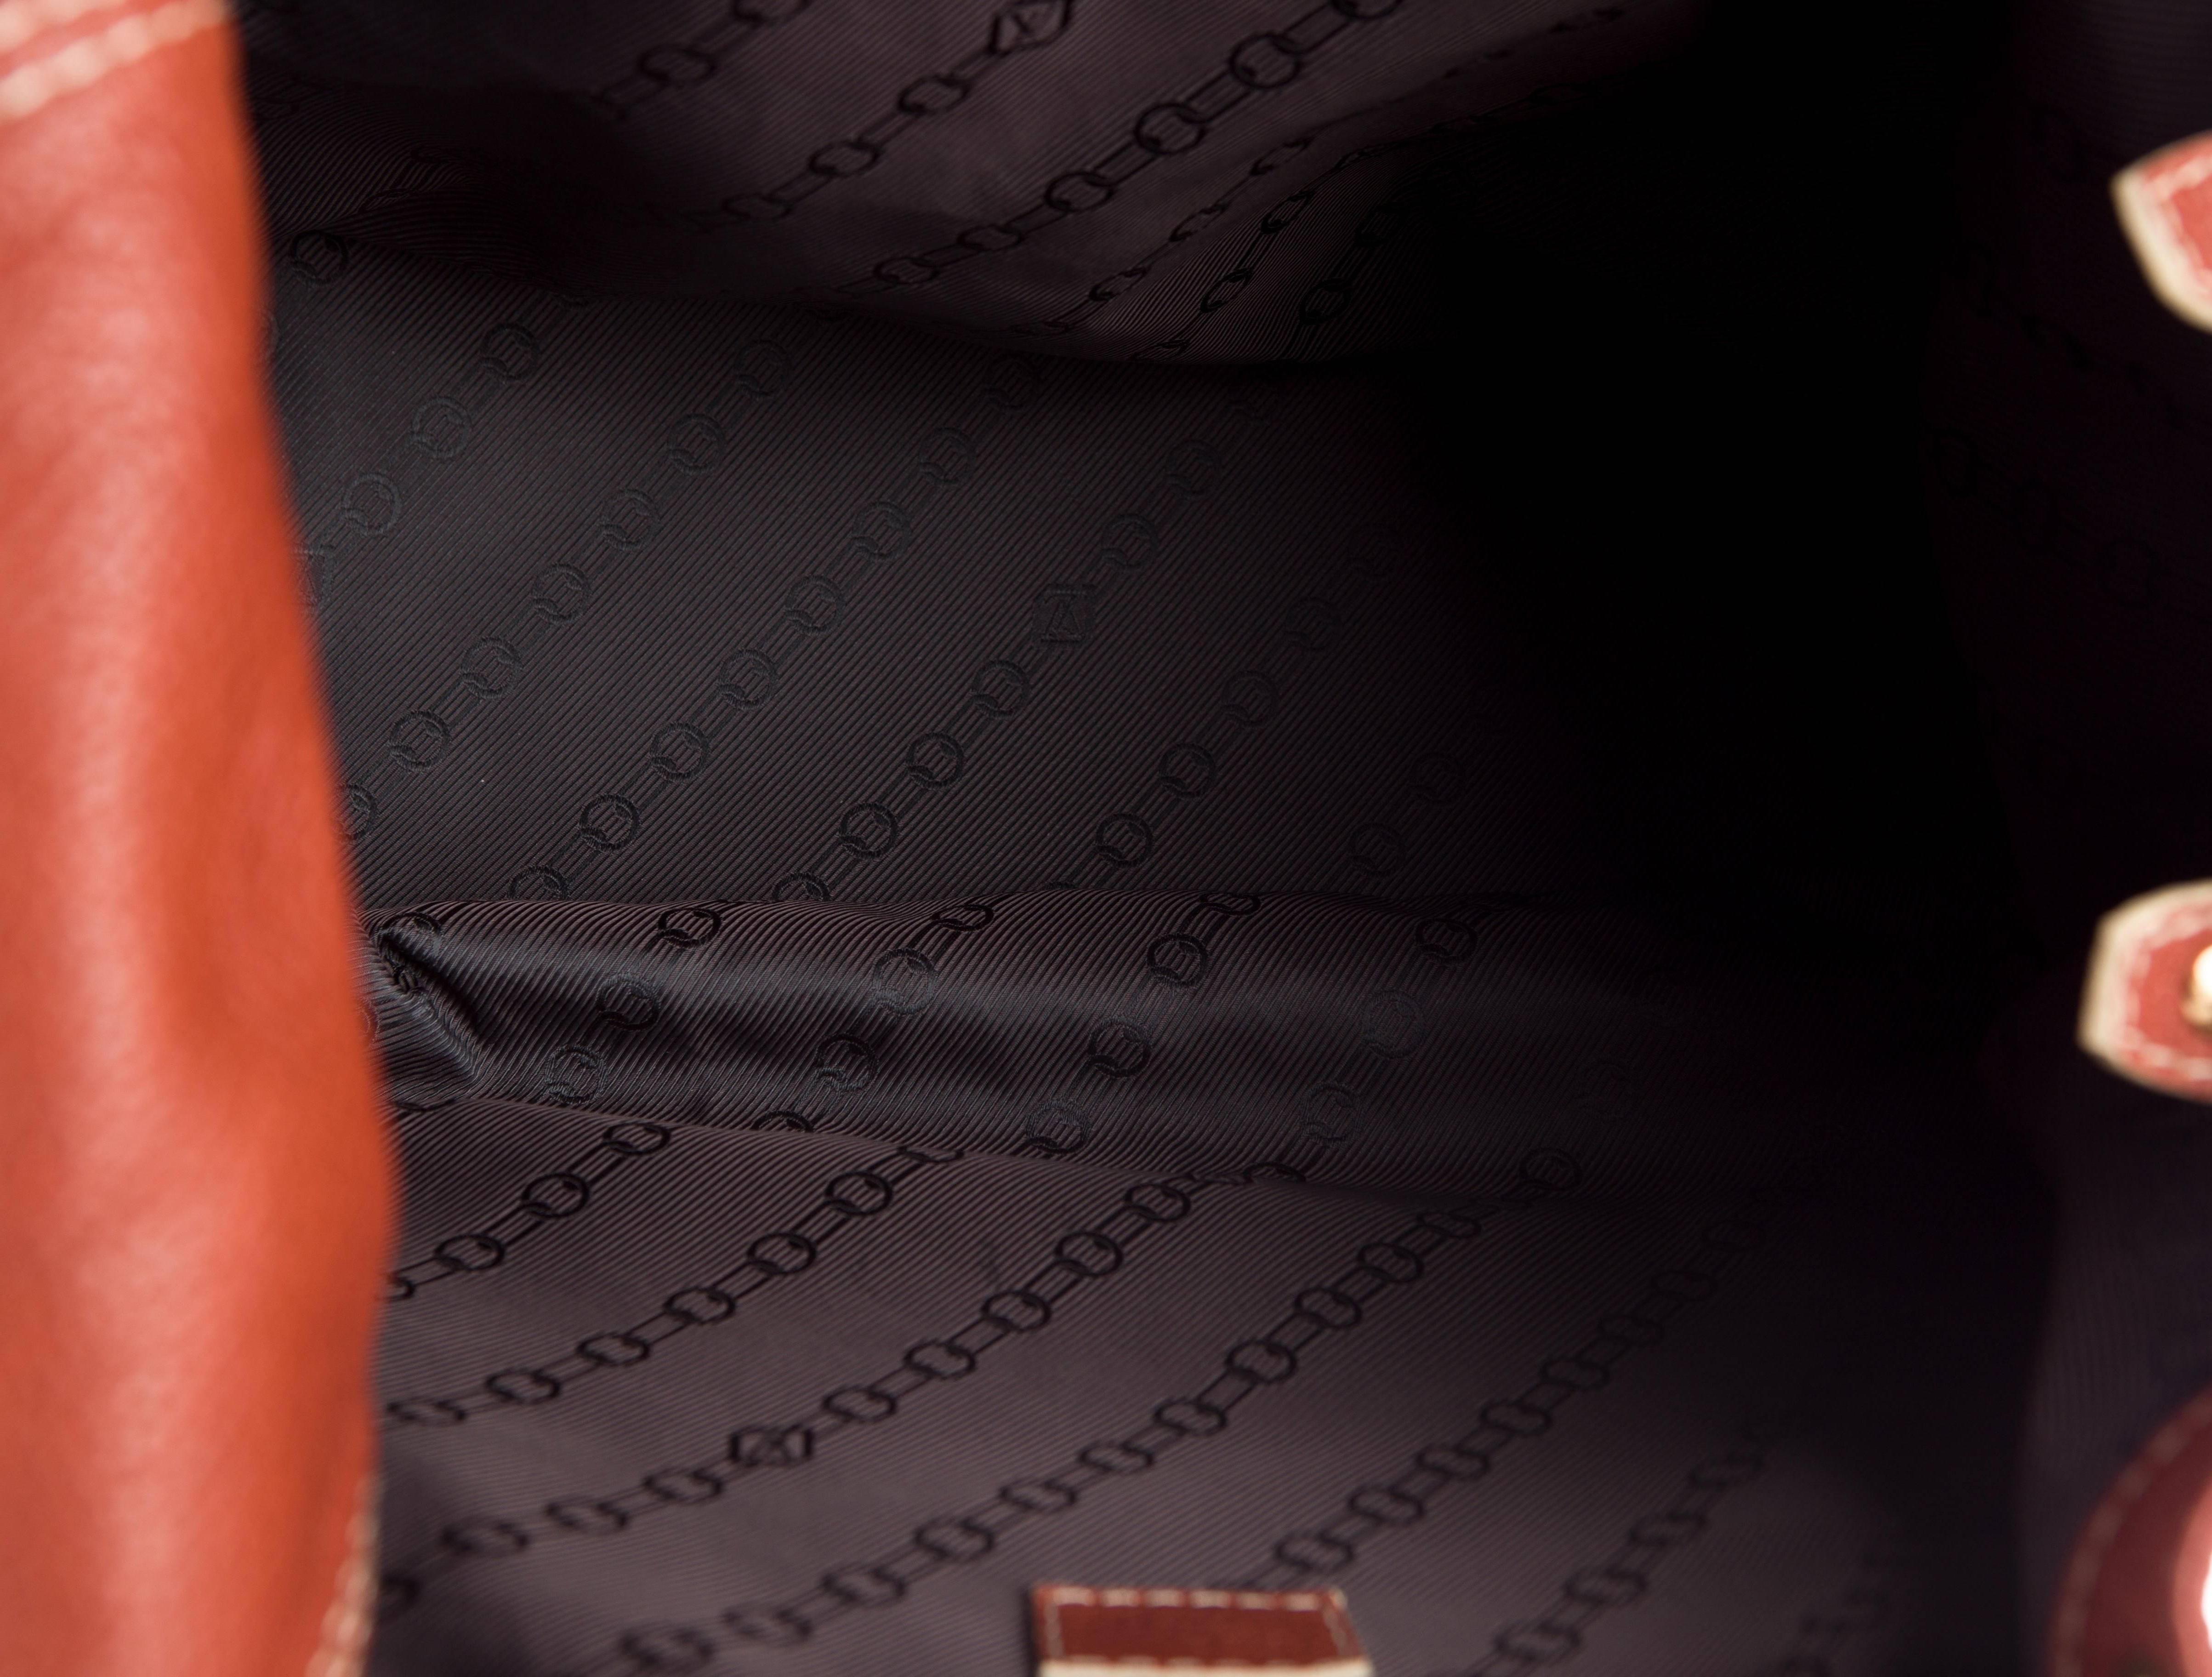 Louis Vuitton Cognac Leather Men's Carryall Travel Tote Bag 2